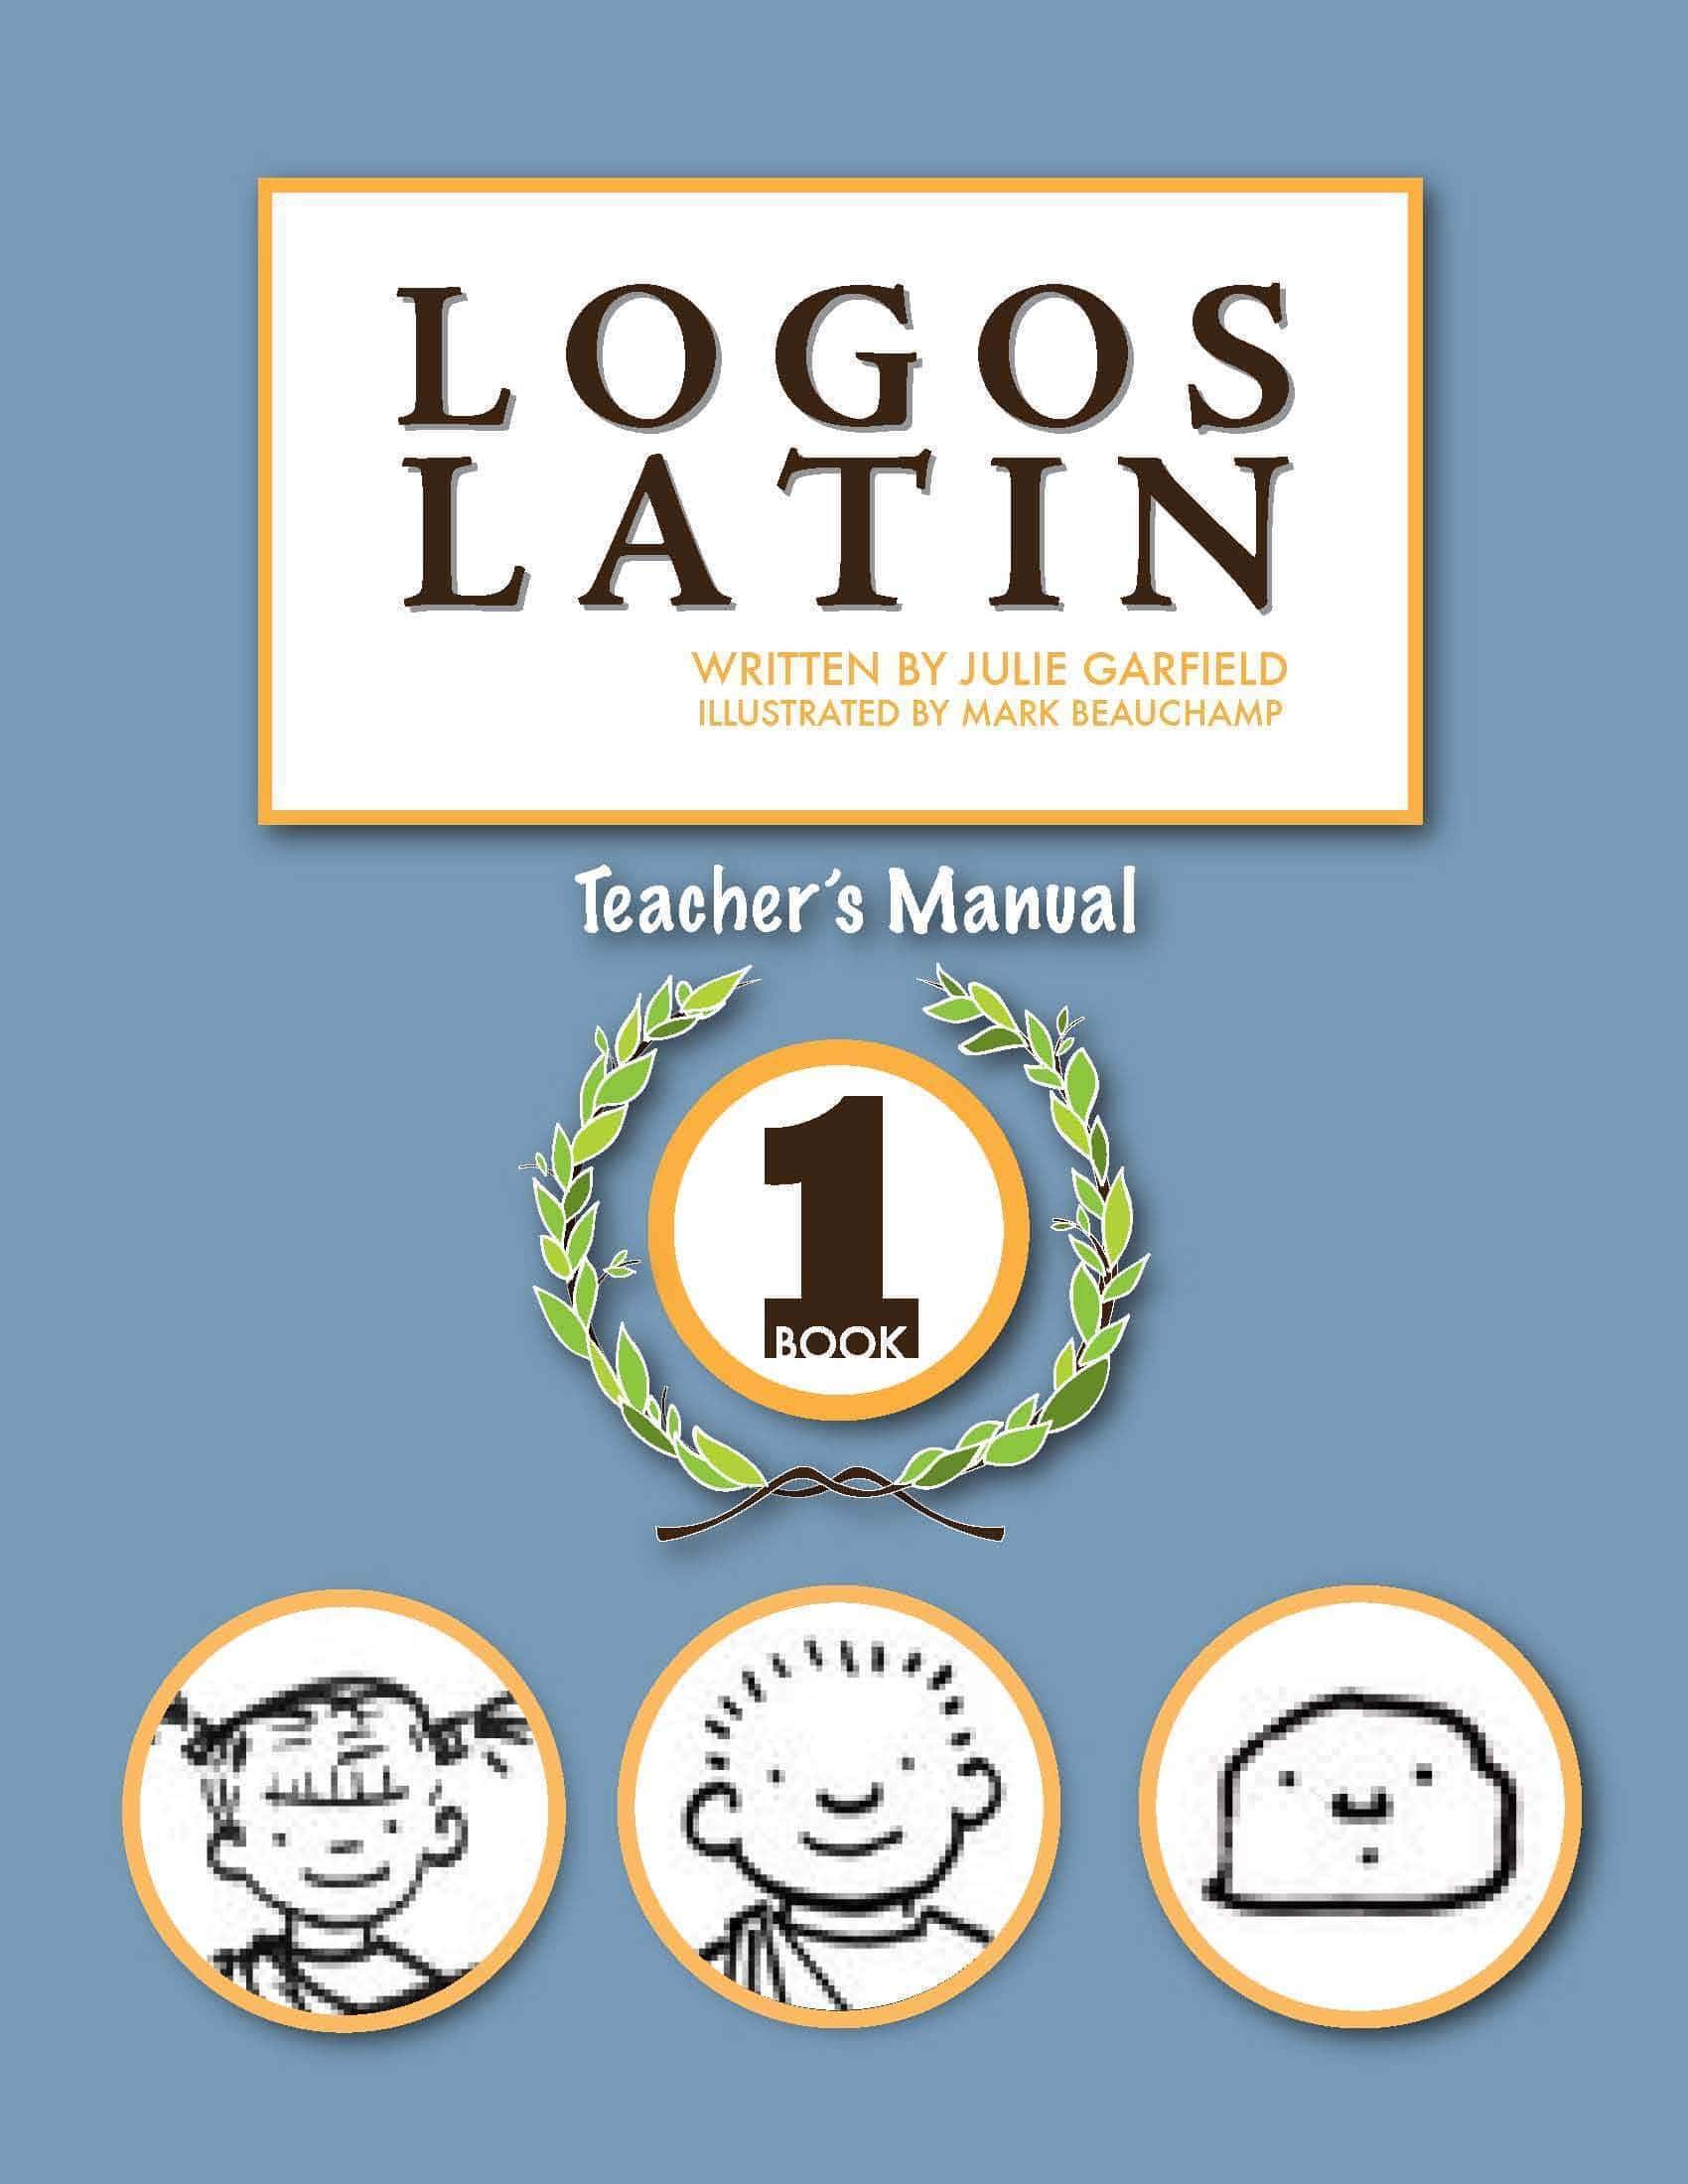 Logos Latin 1